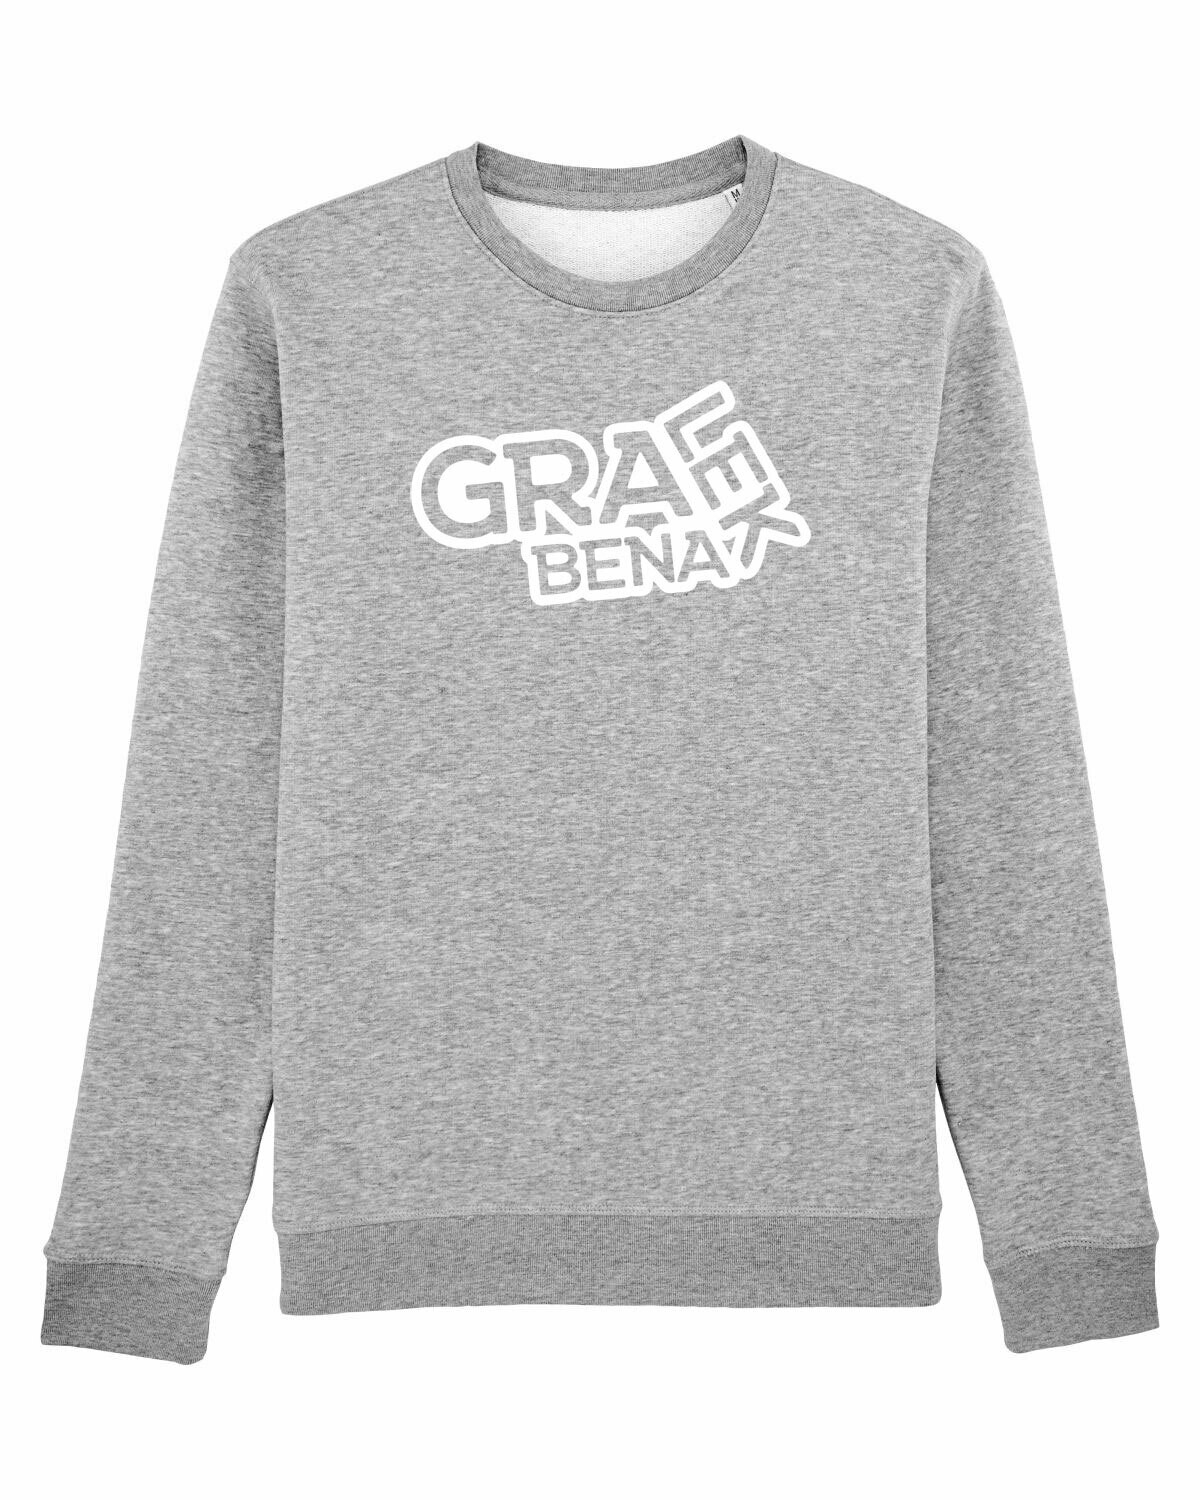 Sweater Gralek Benalek